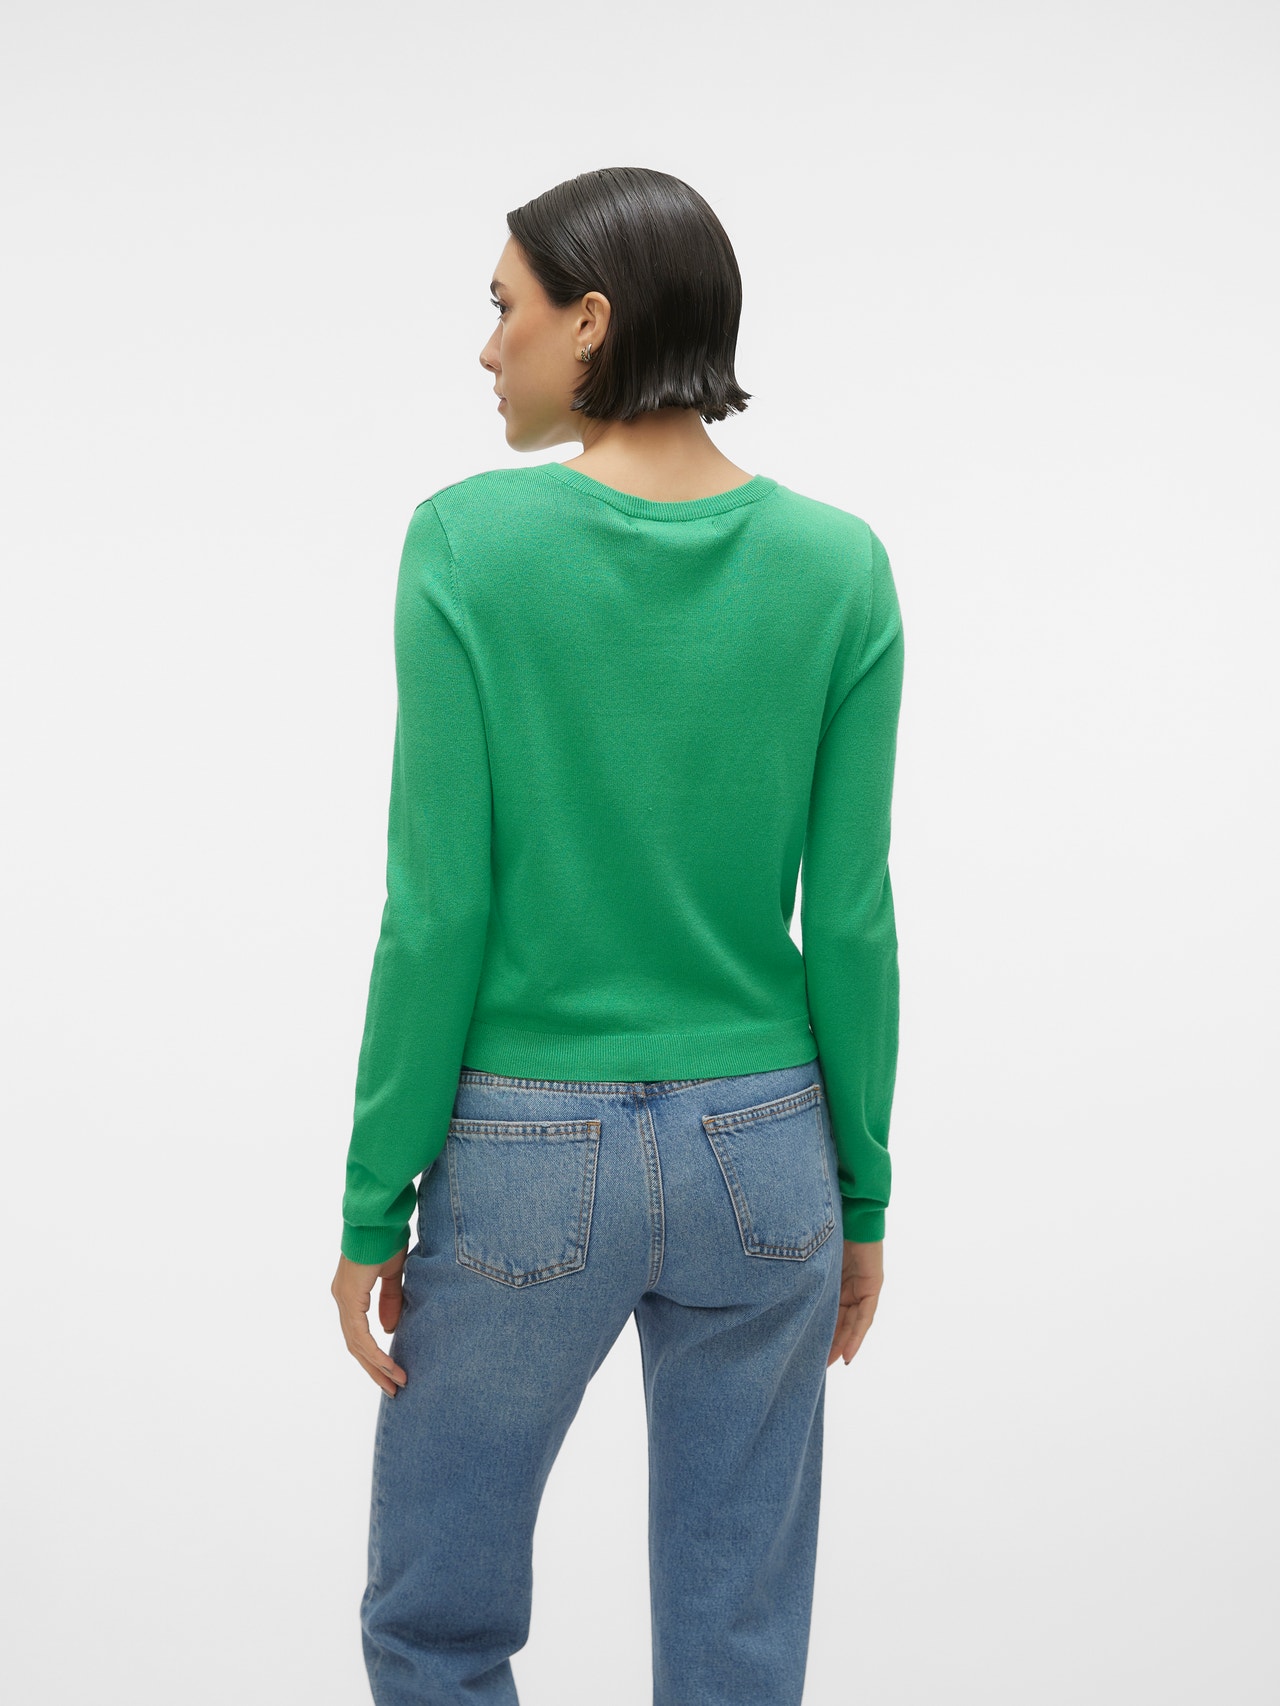 Vero Moda VMGLORY Knit Cardigan -Bright Green - 10300340